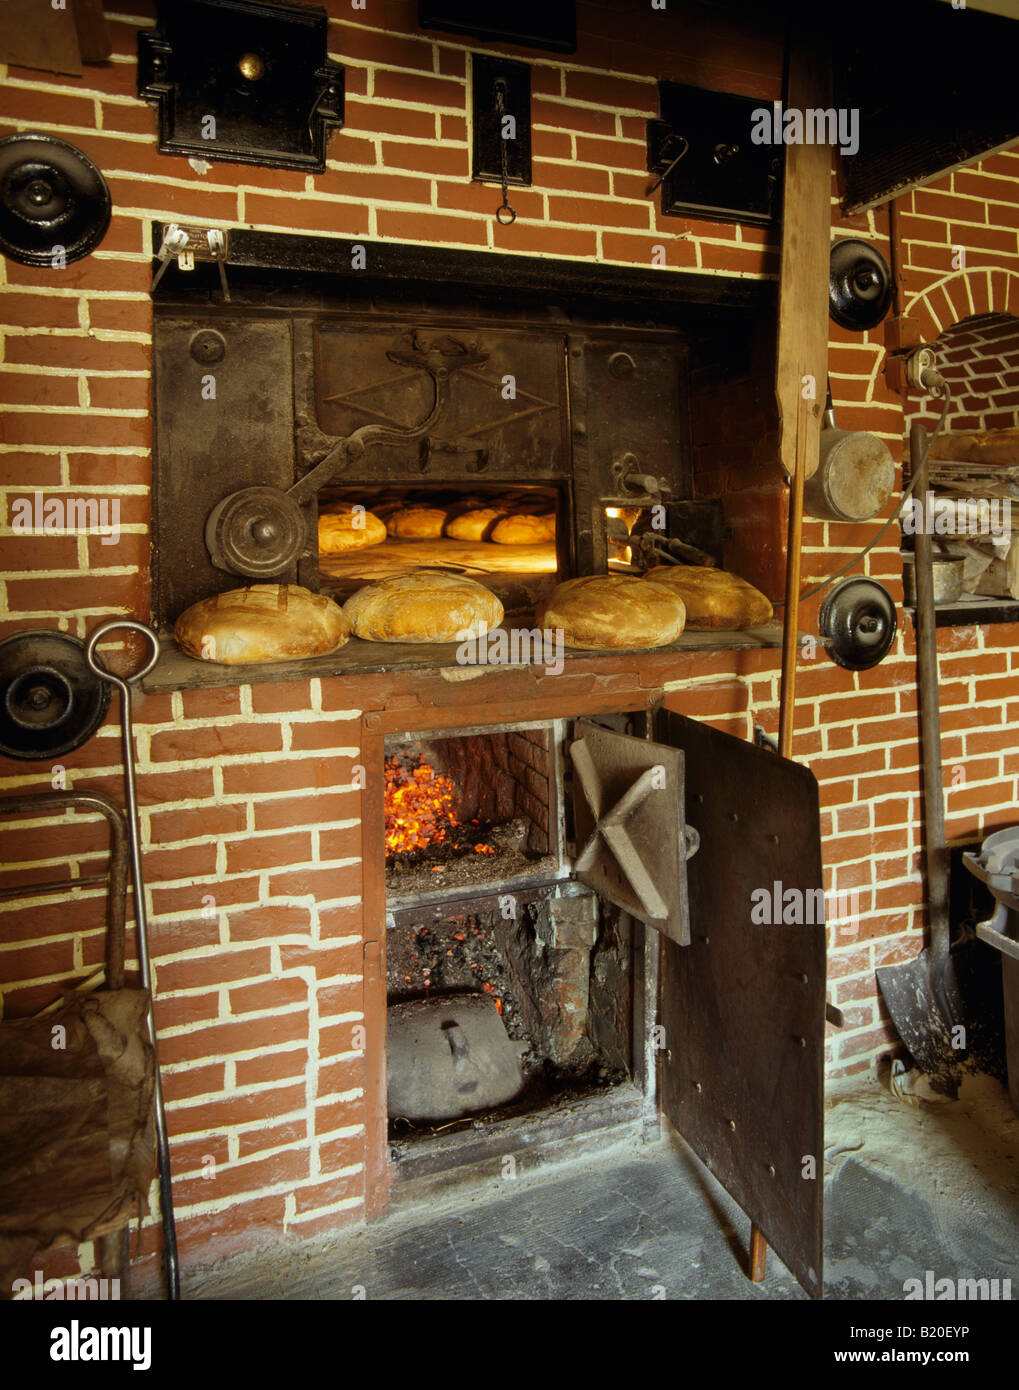 Baking bread in a wood fired oven La Roquette near ...